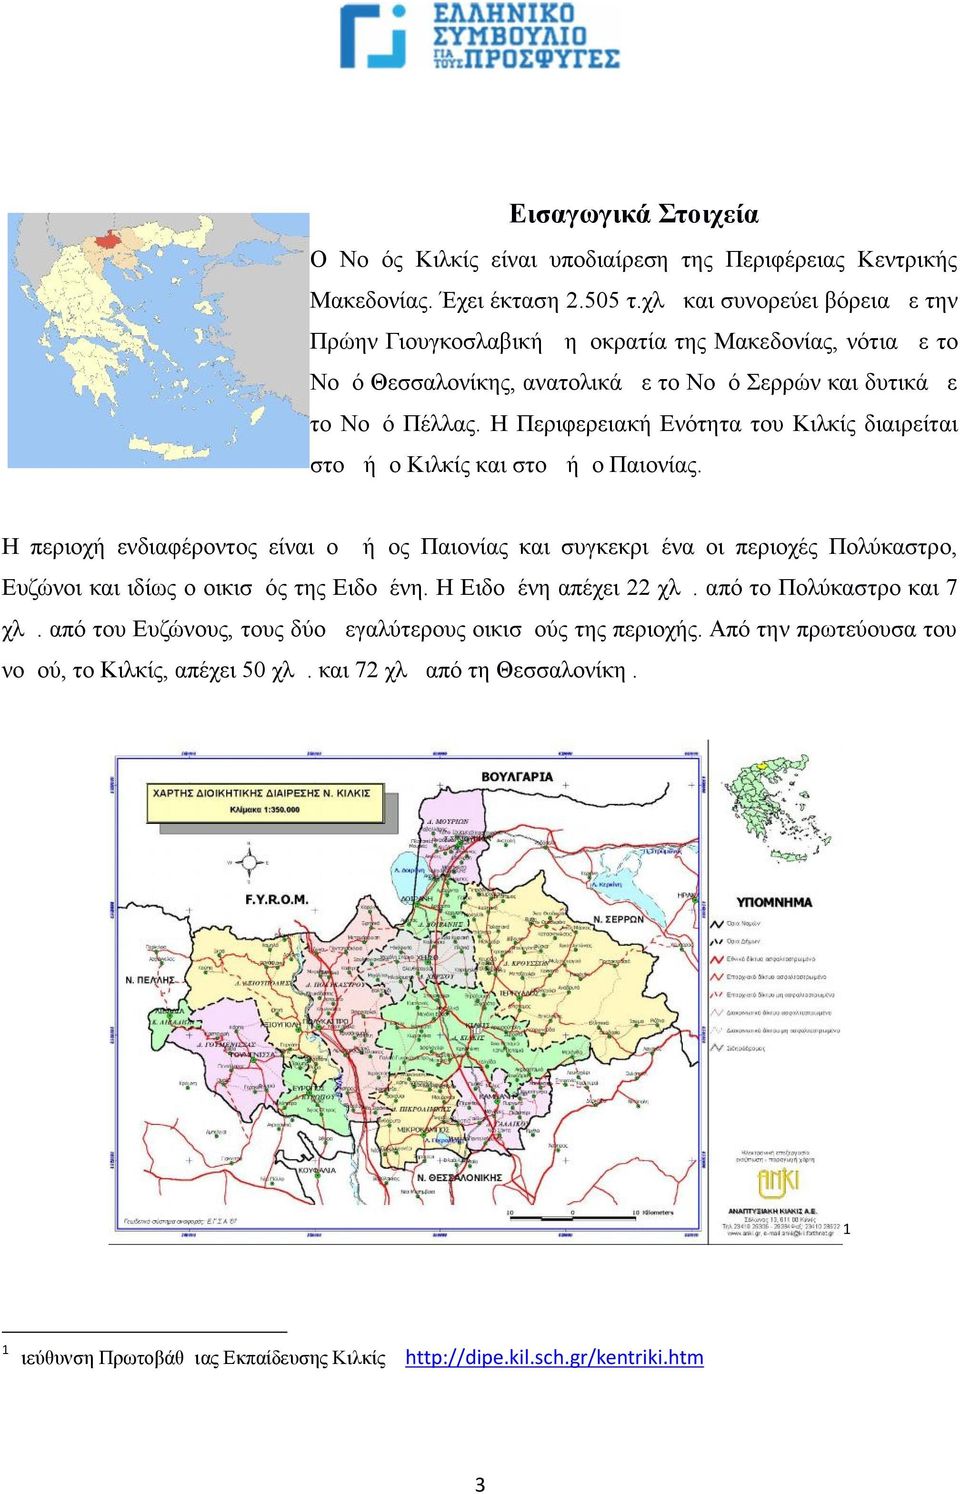 Η Περιφερειακή Ενότητα του Κιλκίς διαιρείται στο Δήμο Κιλκίς και στο Δήμο Παιονίας.